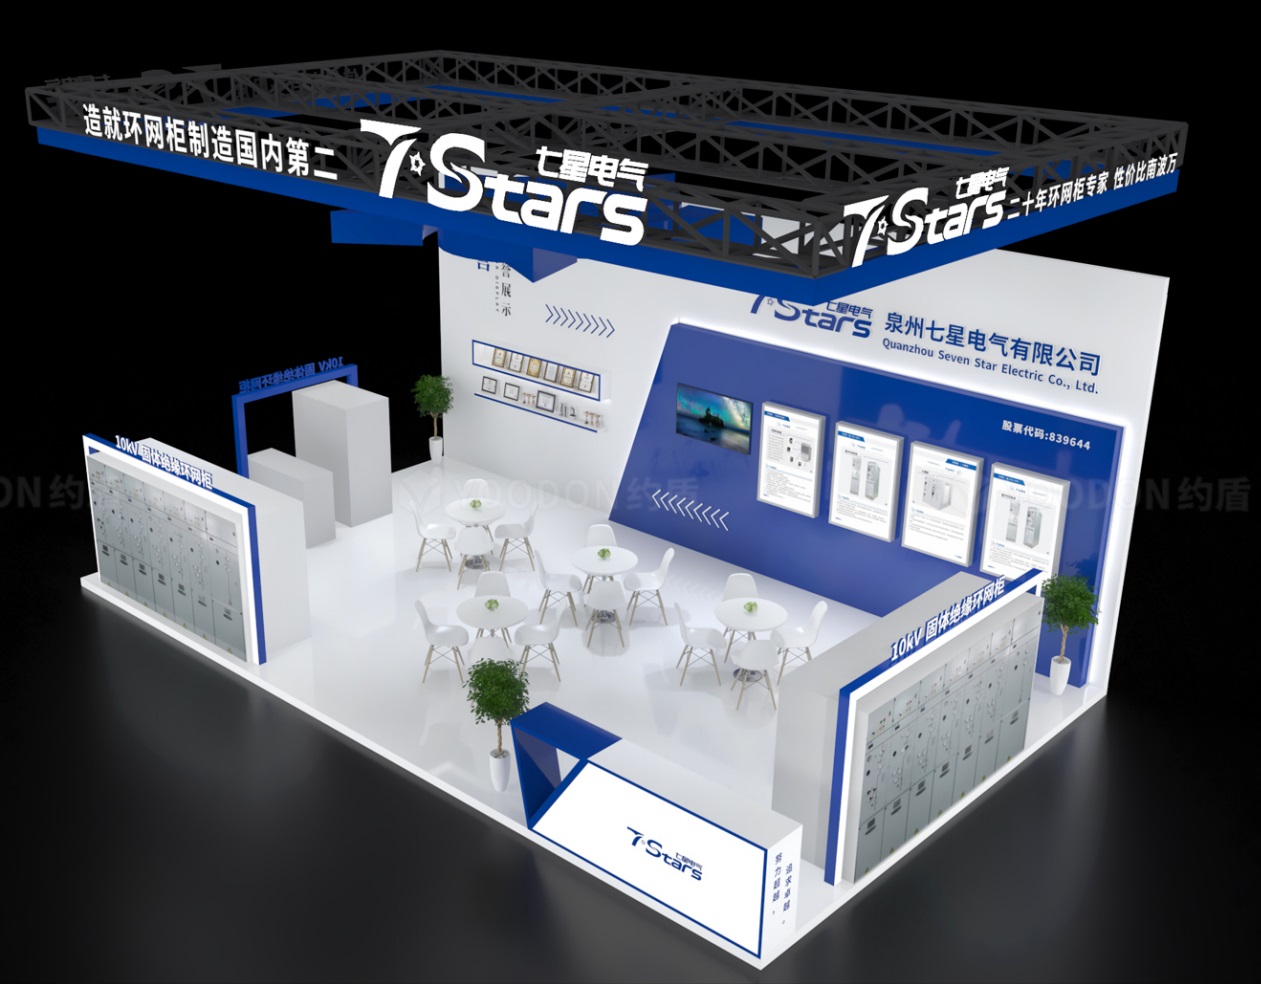 Quanzhou Seven Stars Electric est apparu au salon EP Electric Power de Shanghai, présentant ses derniers produits, des armoires principales en anneau immergées dans l'eau et de petites armoires basses - le numéro du stand...